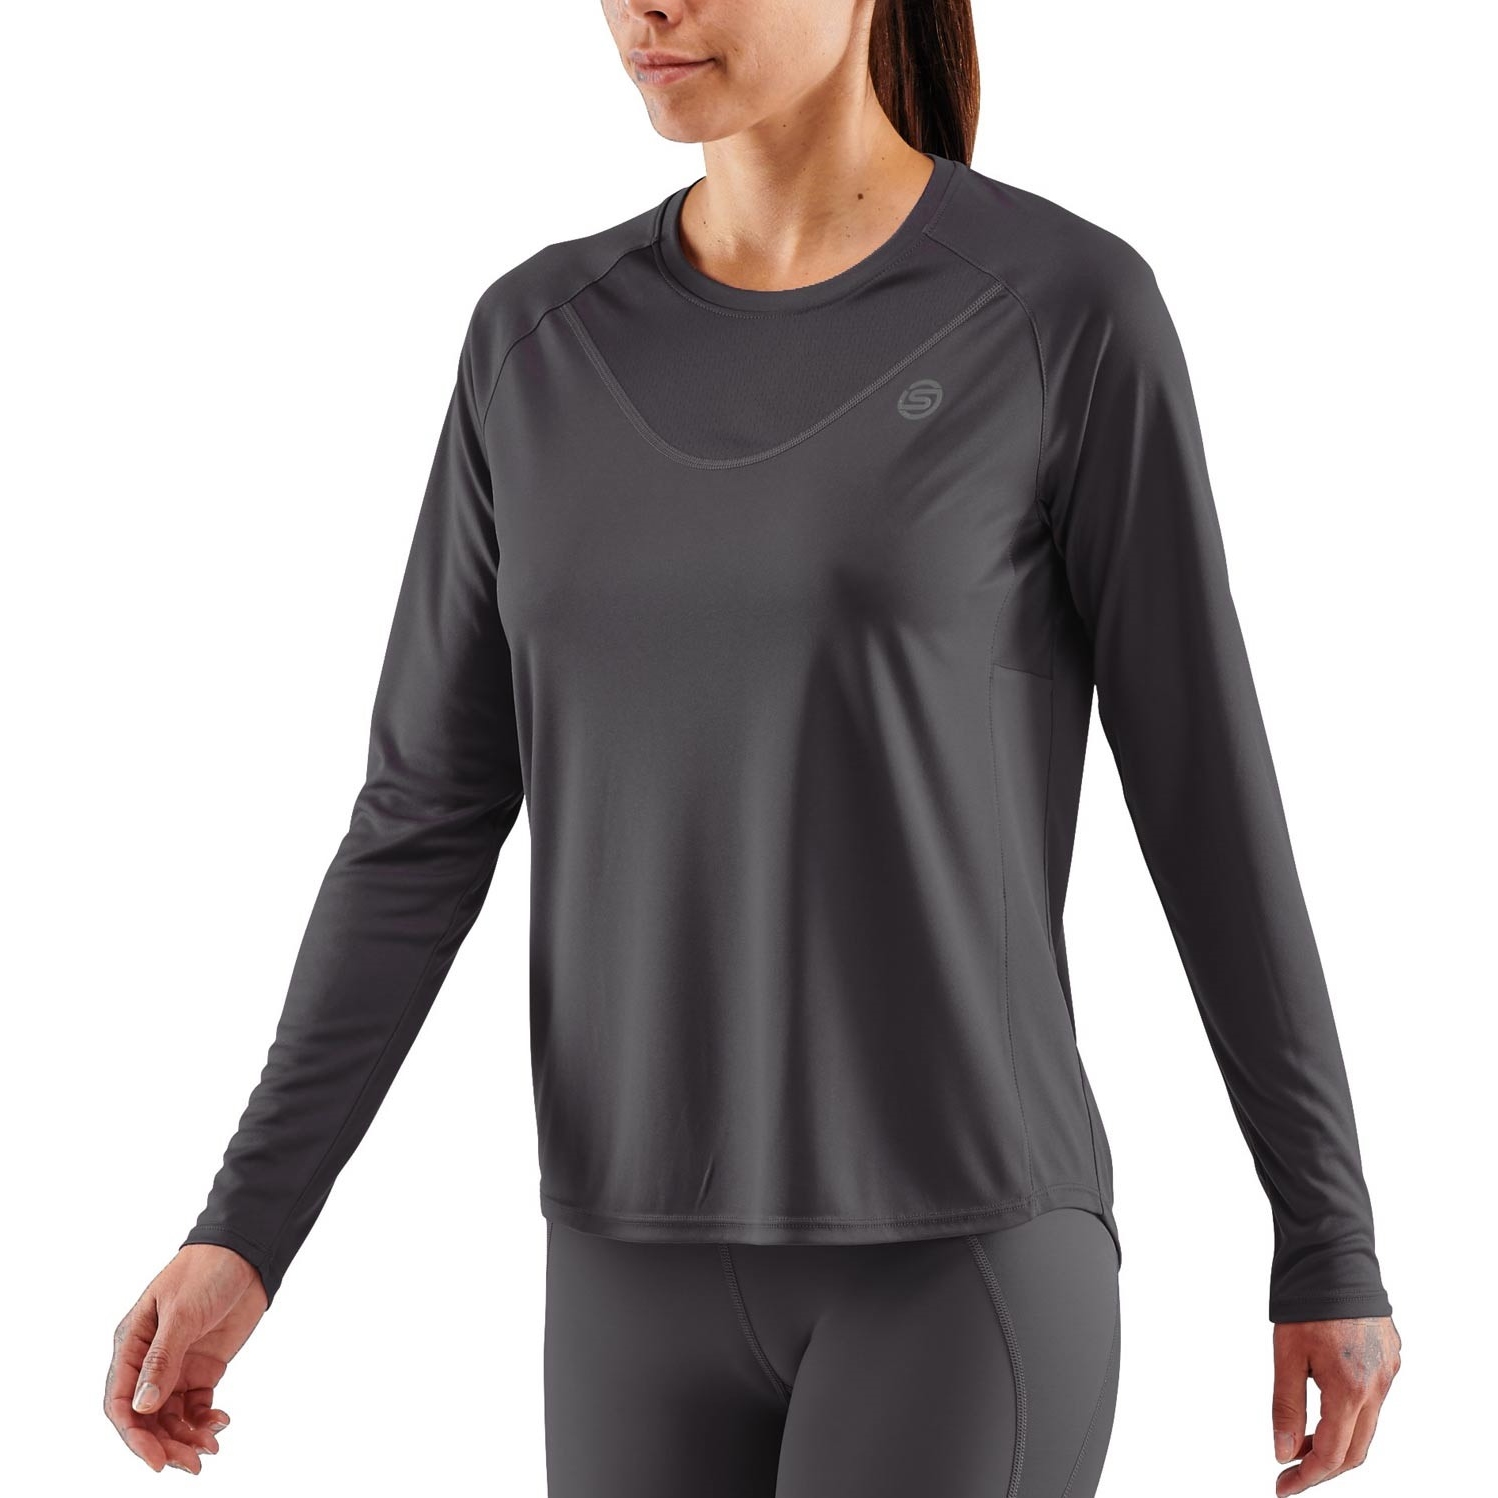 Produktbild von SKINS Activewear 3-Series Langarm-Shirt Damen - Schwarz